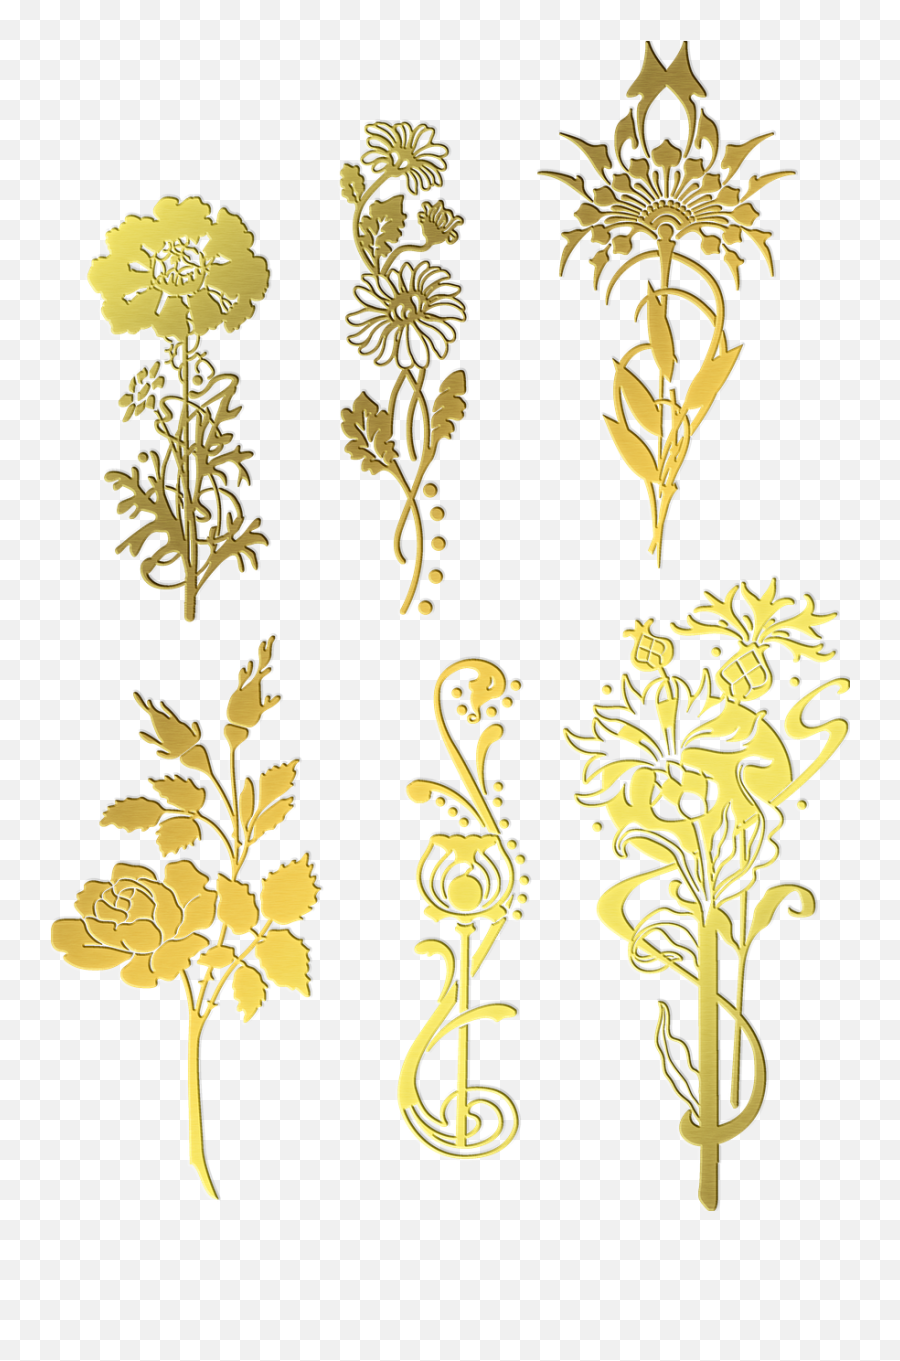 Gold Foil Flowers Flower - Free Image On Pixabay Decorative Png,Gold Flower Png